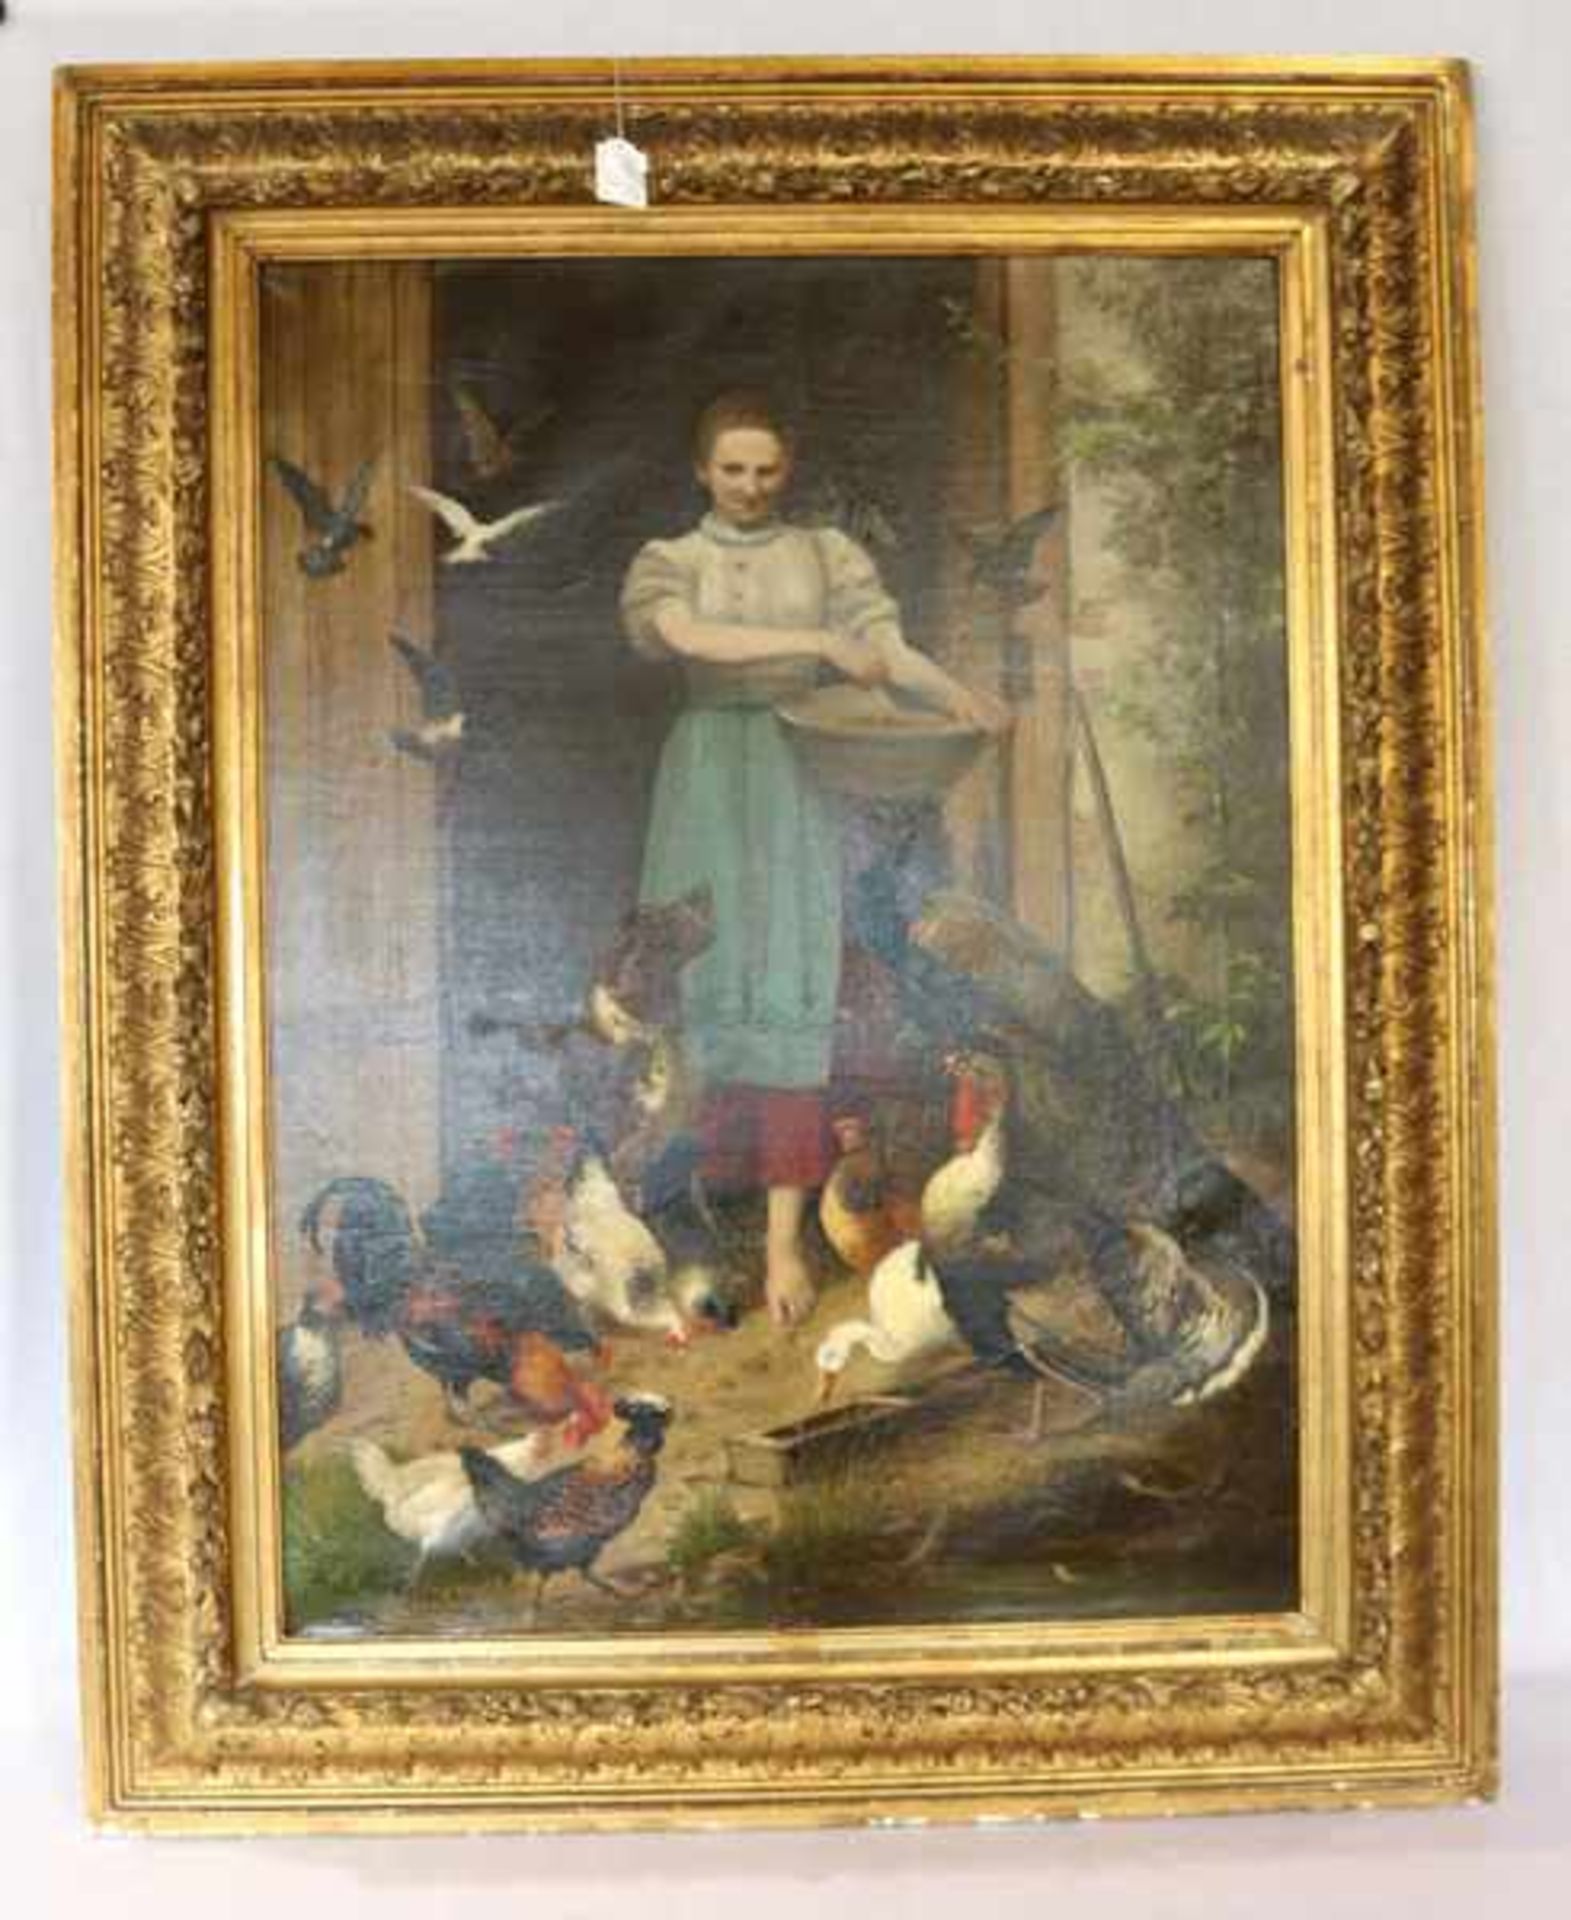 Gemälde ÖL/LW 'Junges Mädchen beim Hühnerfüttern', signiert Jul. (Julius) Scheuerer, * 1859